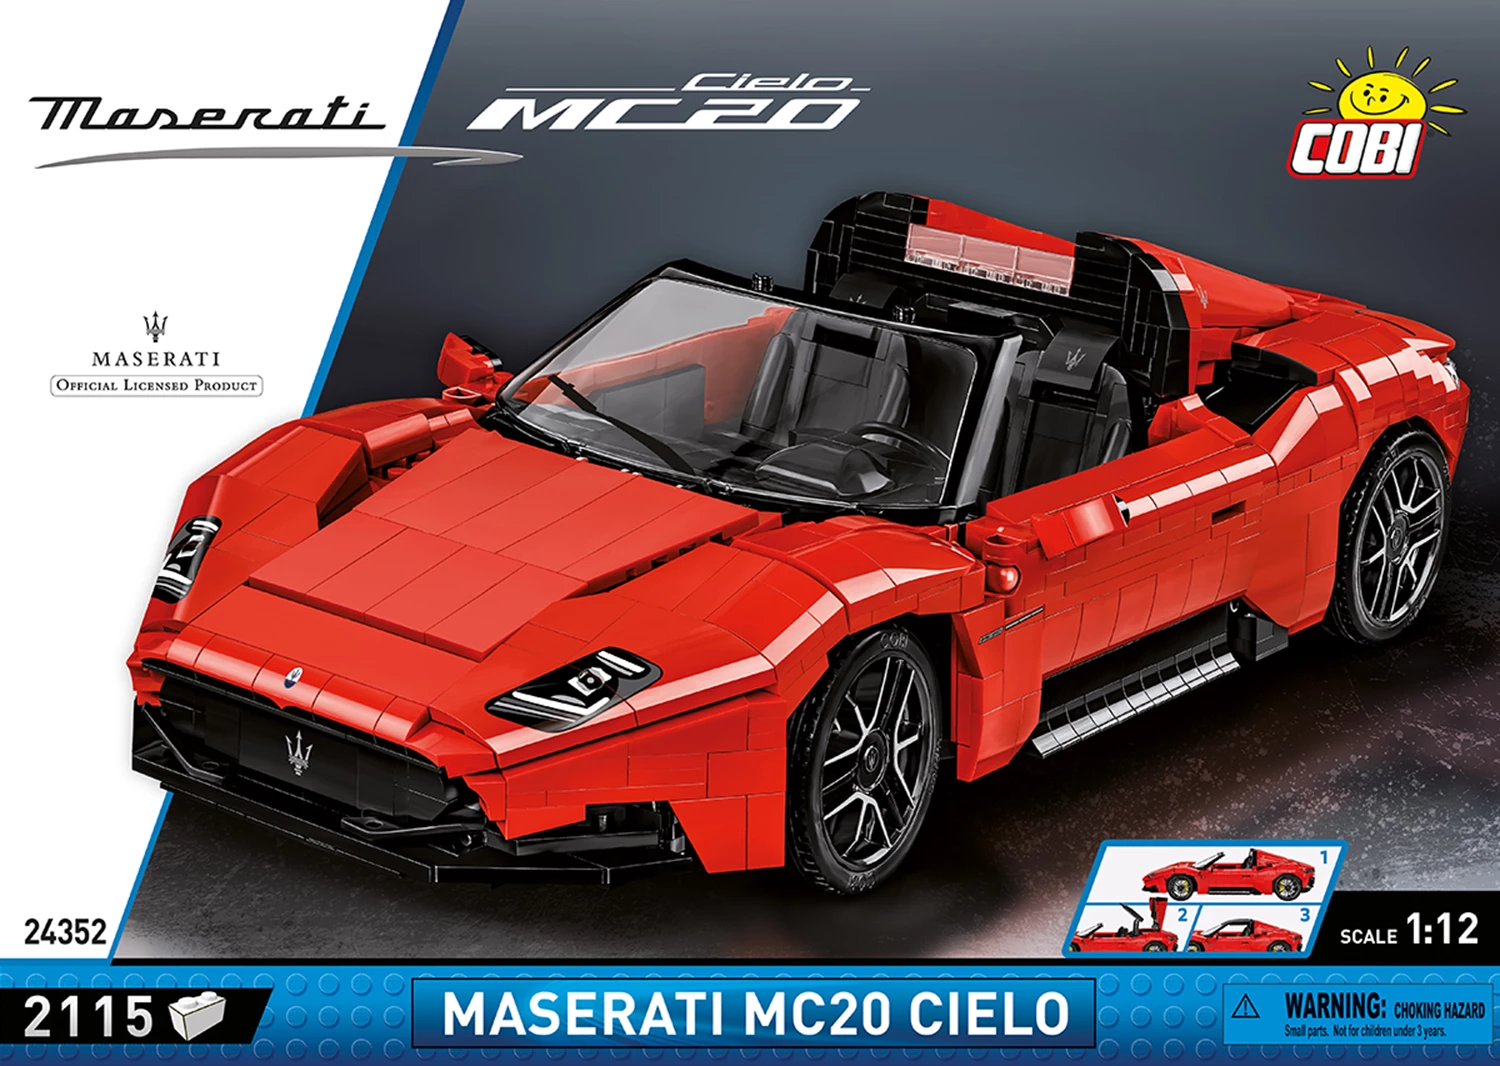 Cobi 24352 1:12 Maserati MC20 / 2115 pcs.